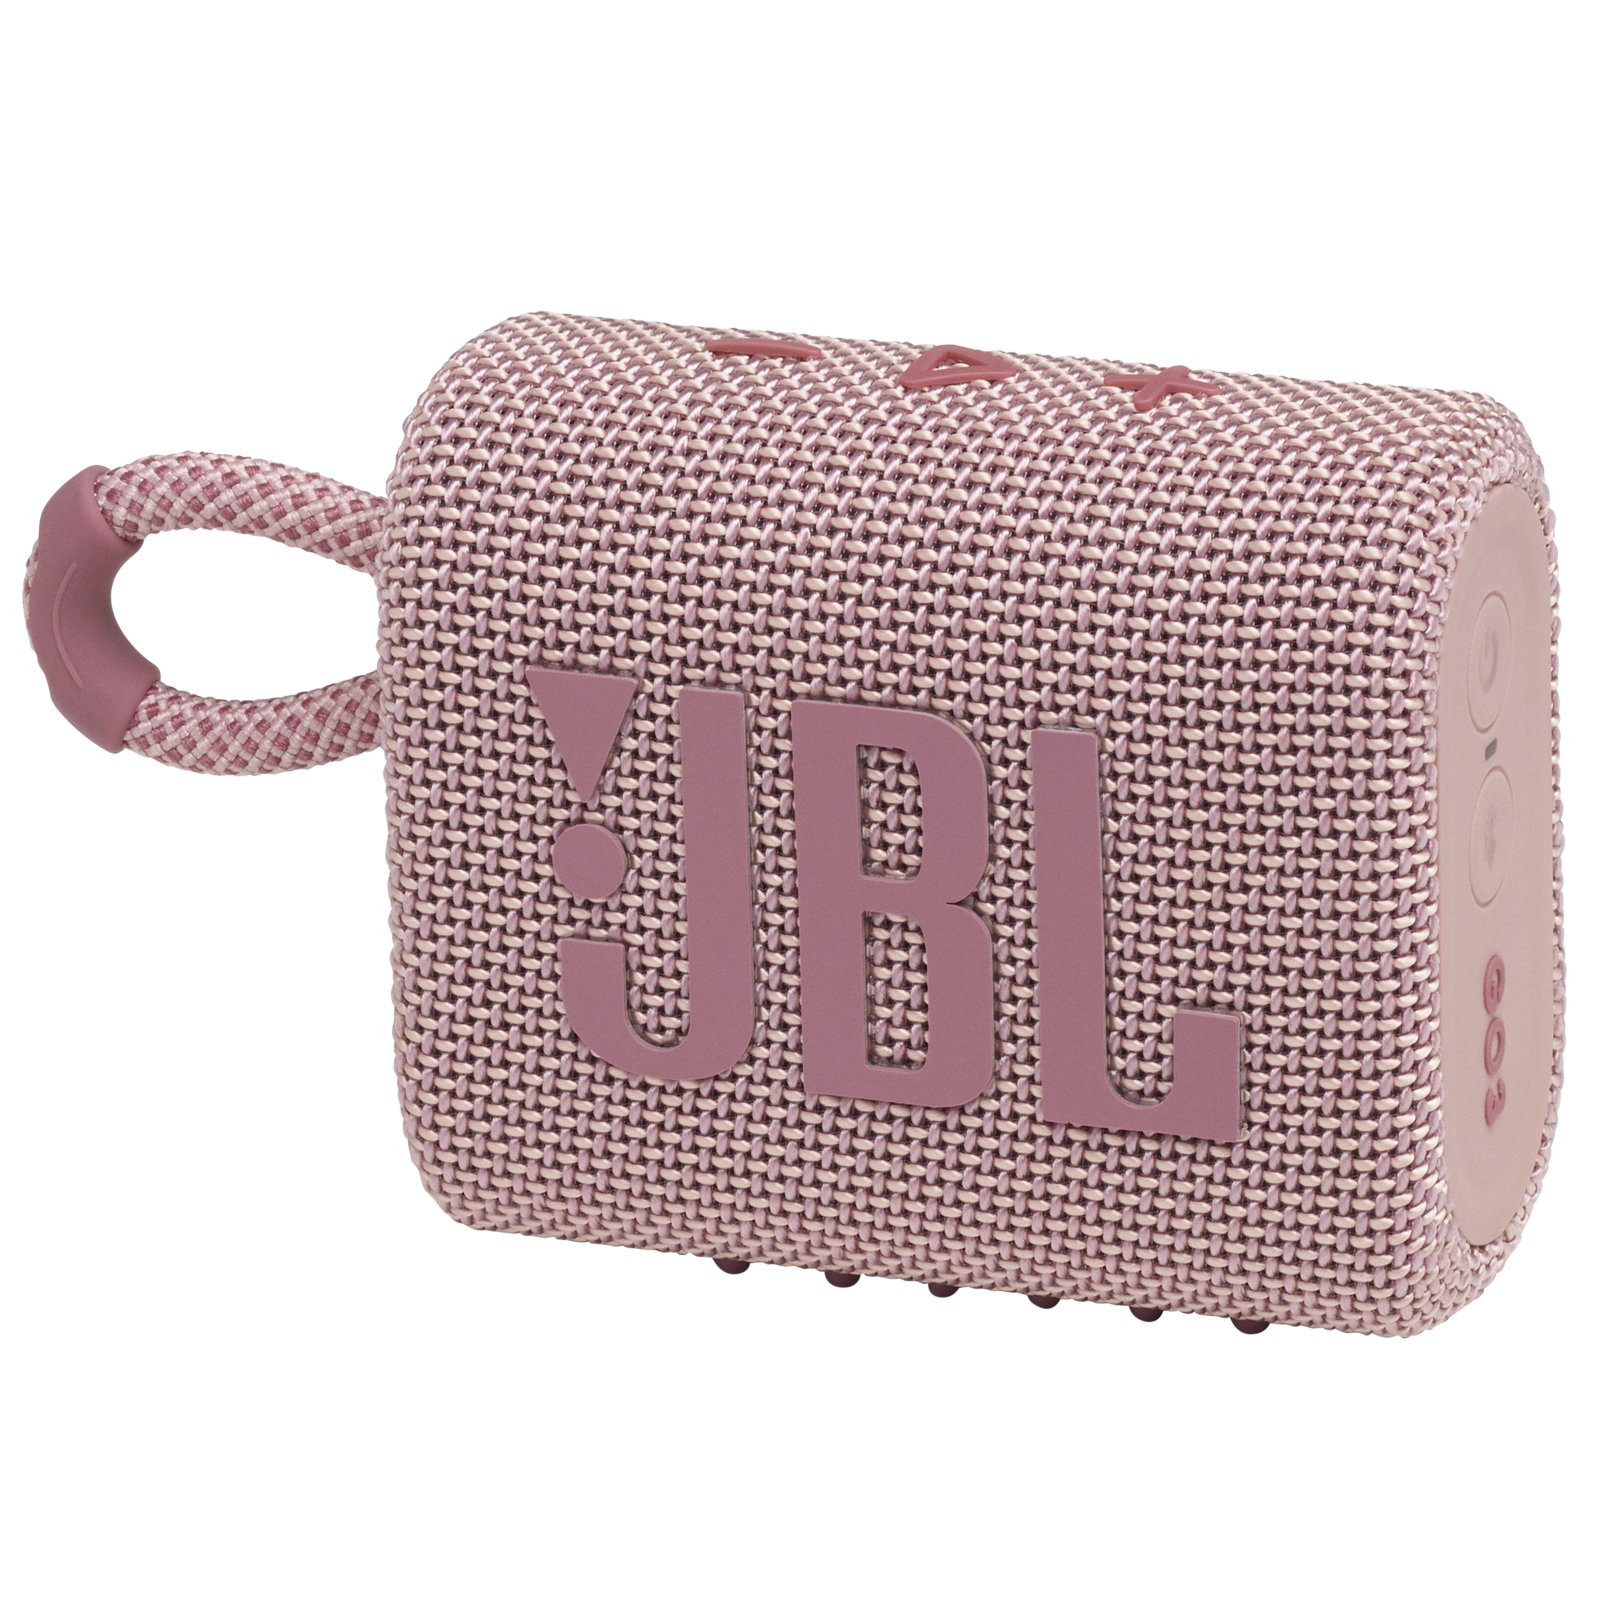 JBL Go 3 - Pink - Portable Waterproof Speaker - Hero